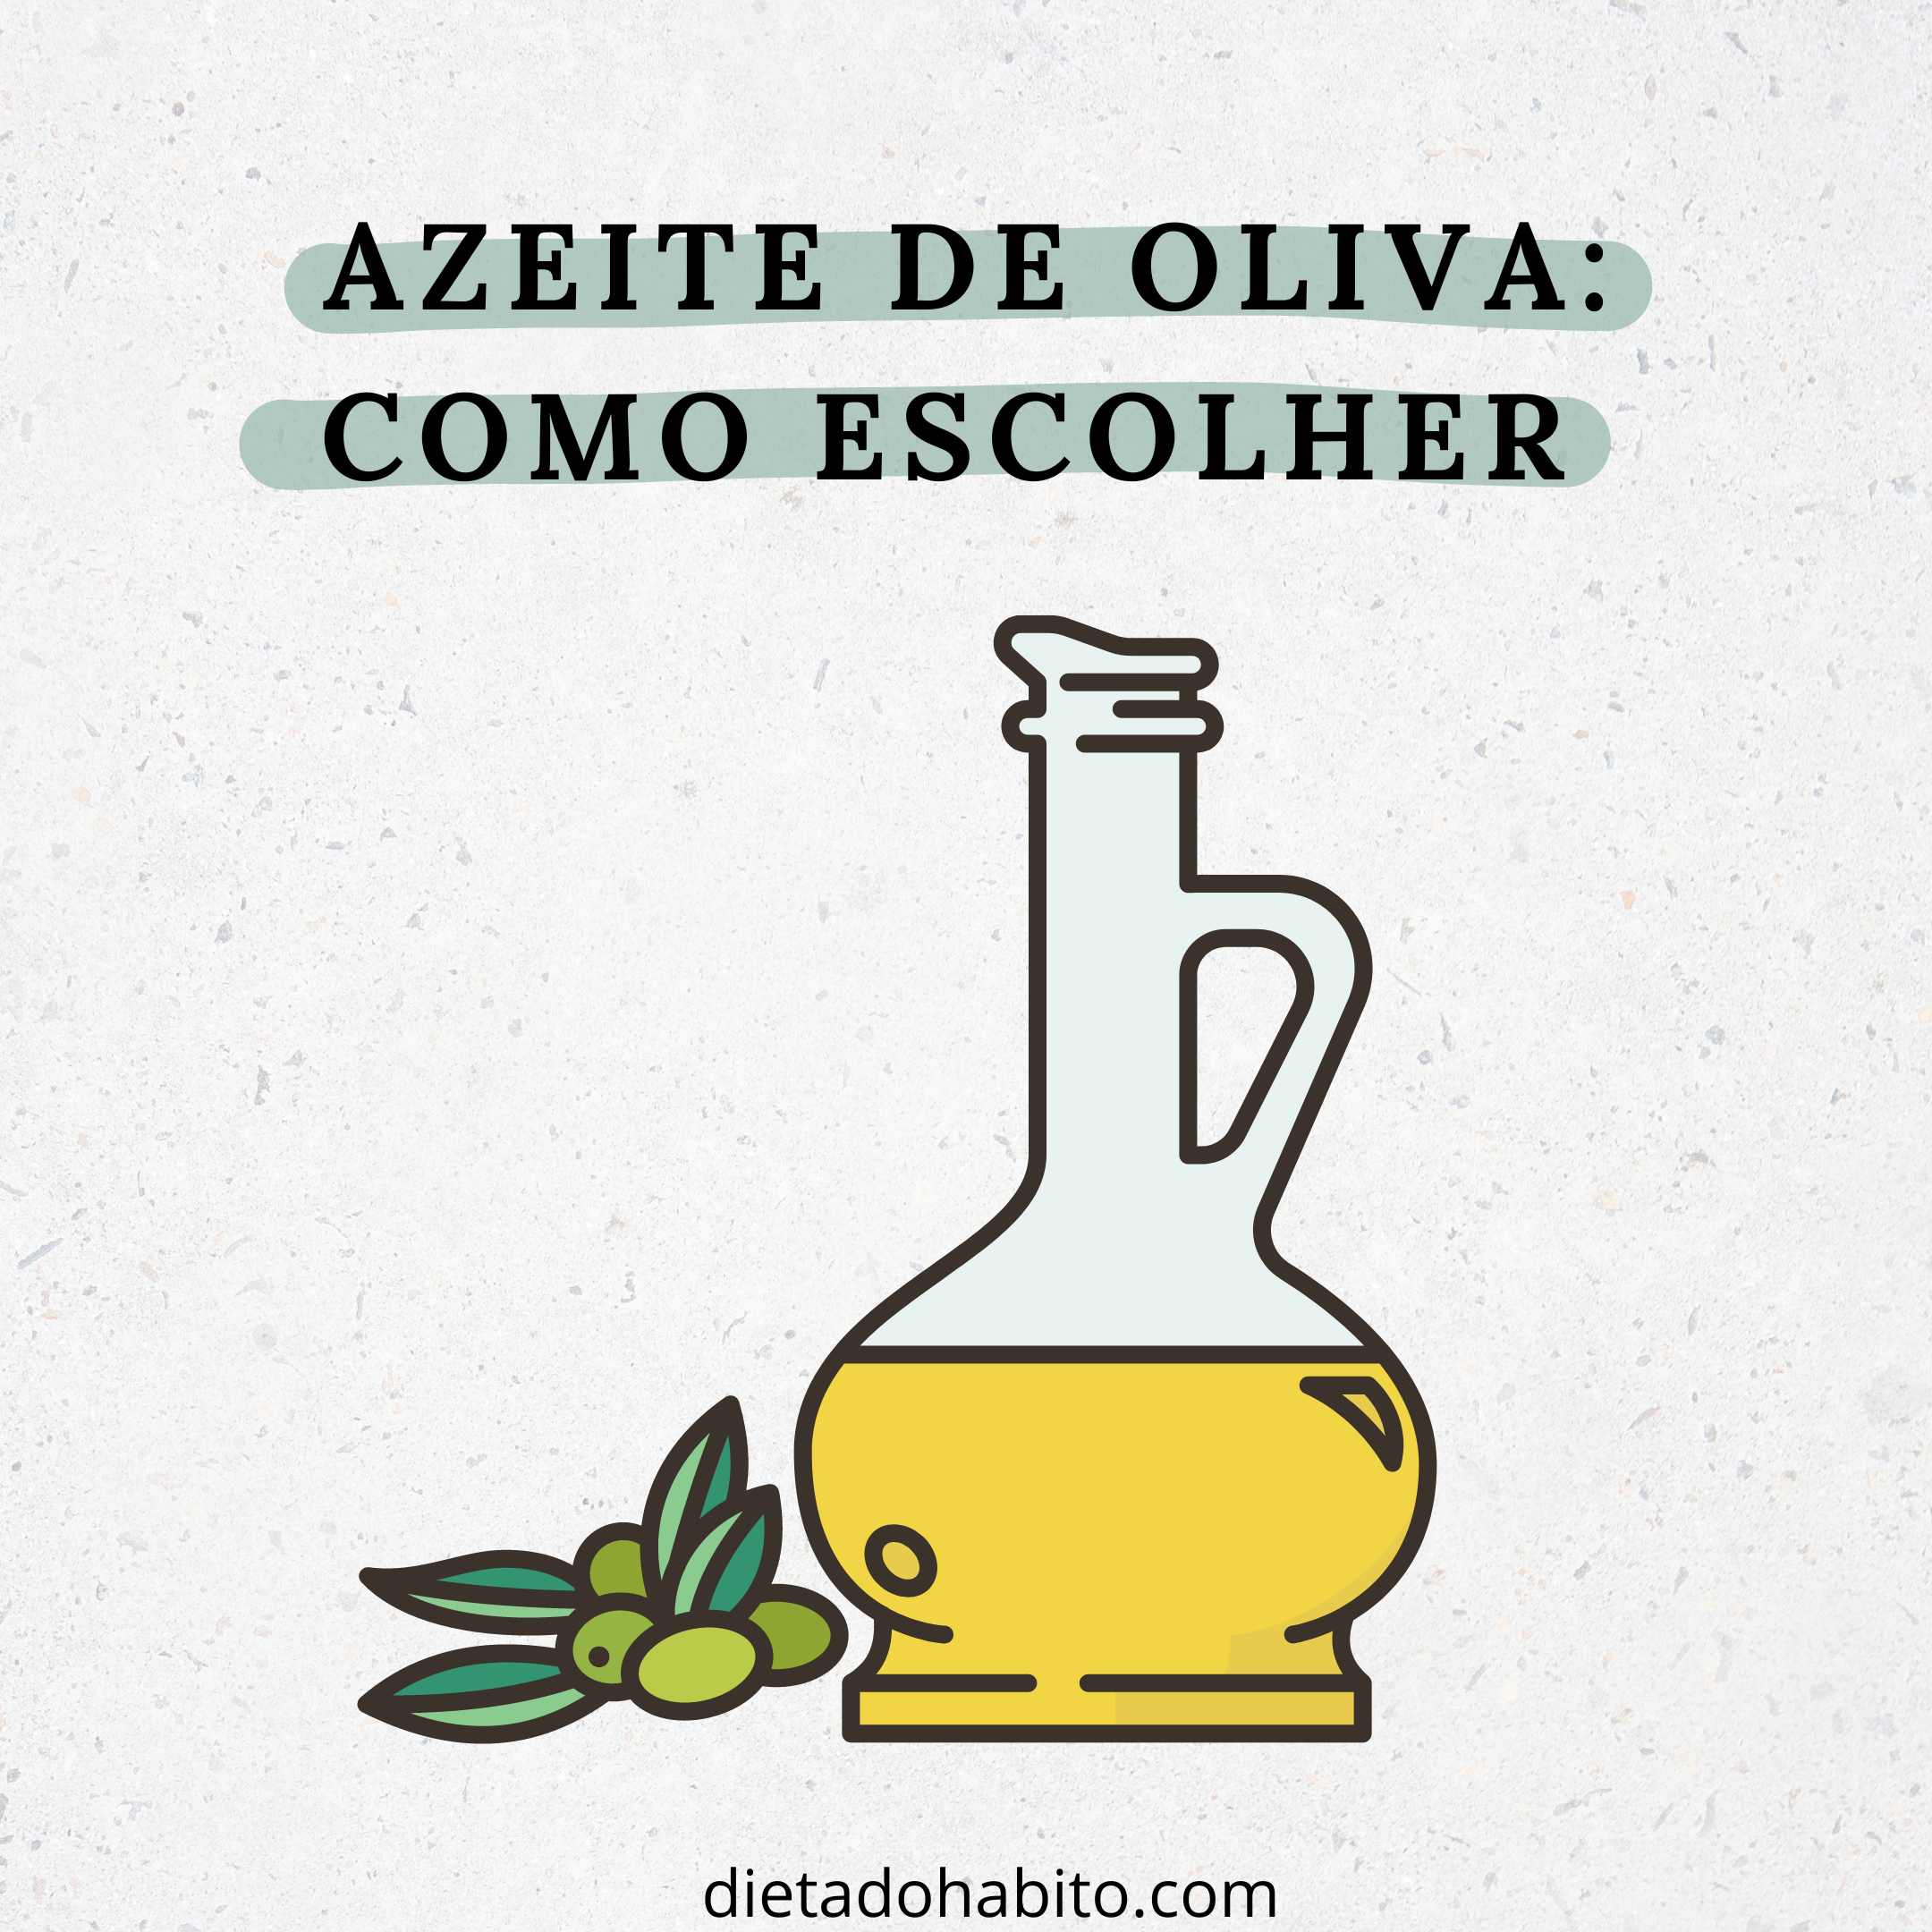 azeite-de-oliva-como-escolher